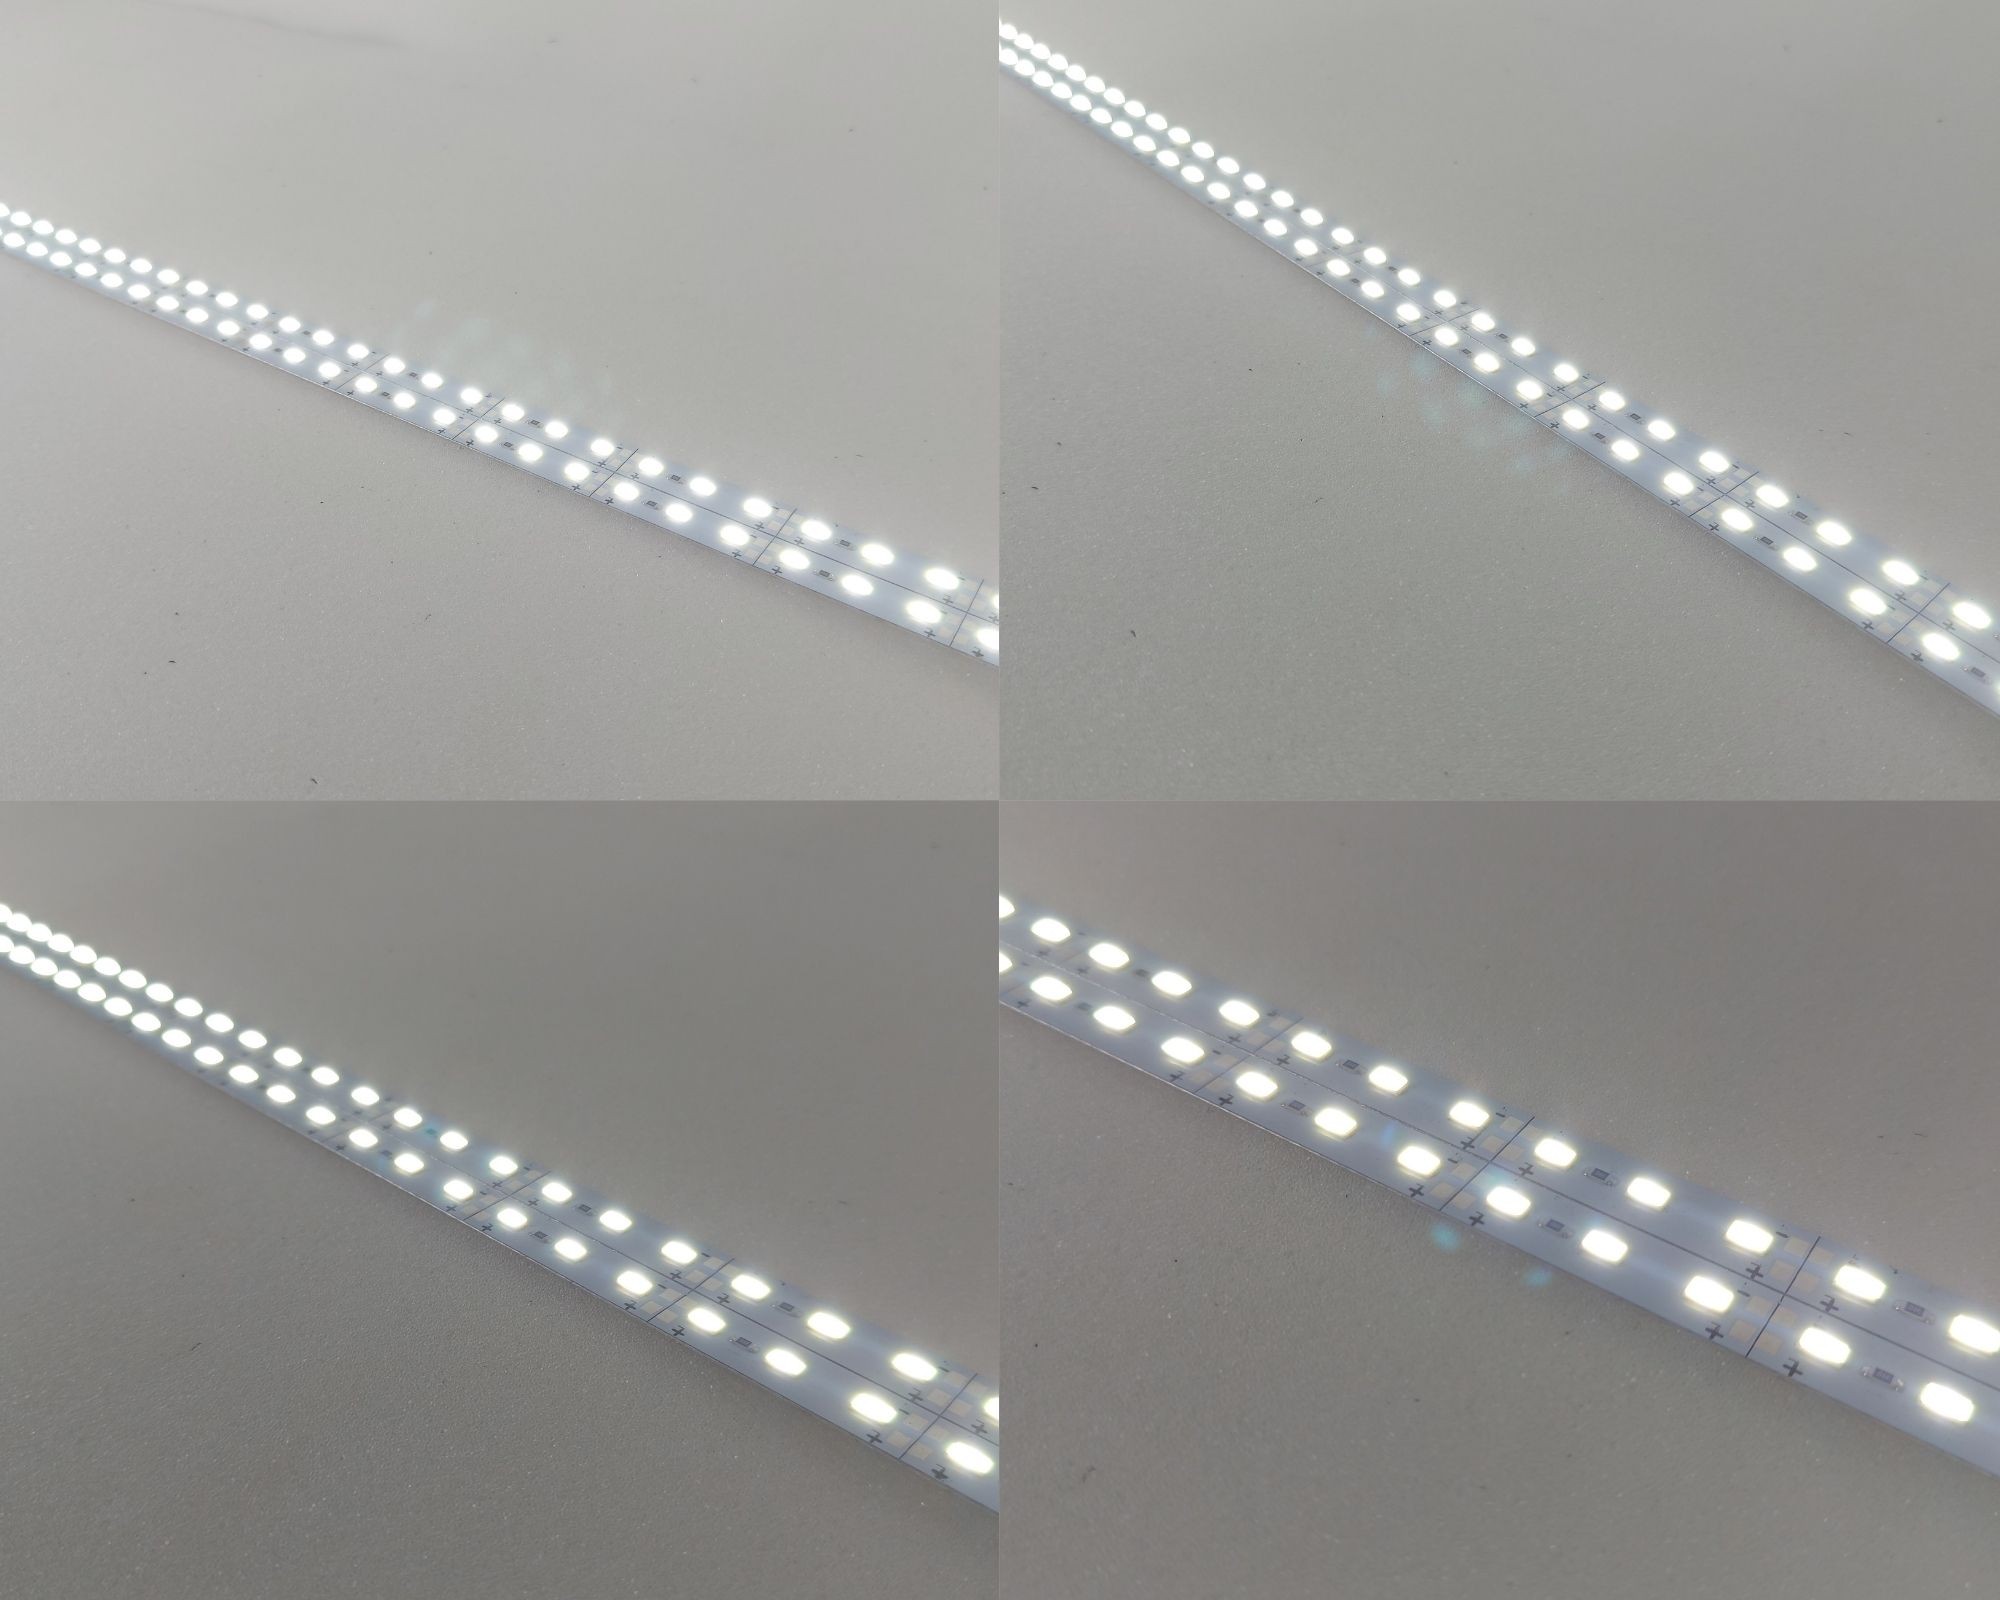 Taśma LED 5630 biała NATURALNA 72D/m sztywna, aluminiowa, na podkładzie aluminiowym